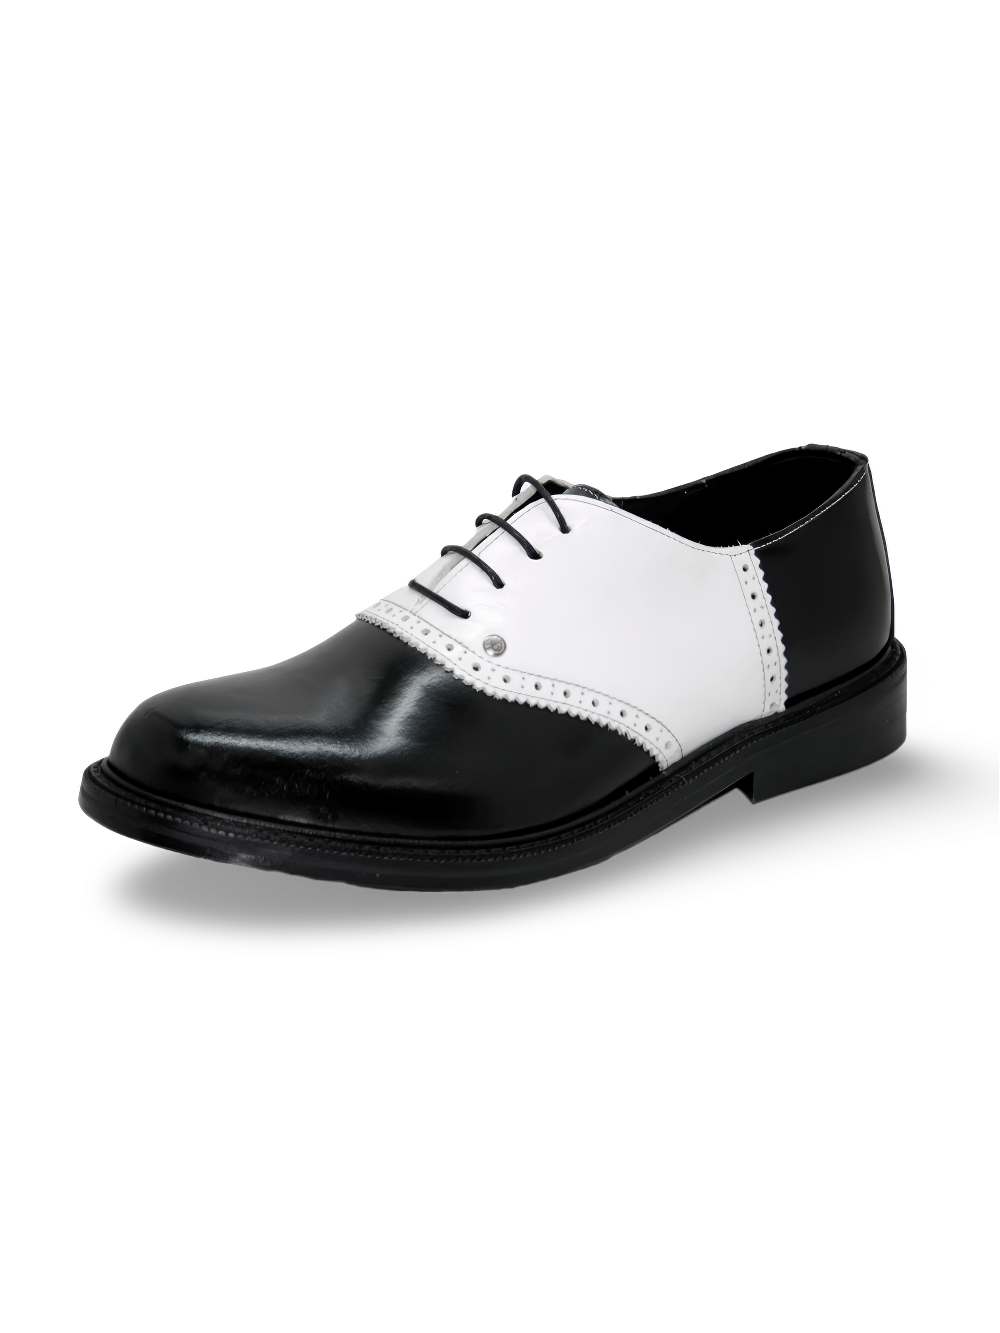 Chaussures en cuir Oxford noir de style Rockabilly pour hommes